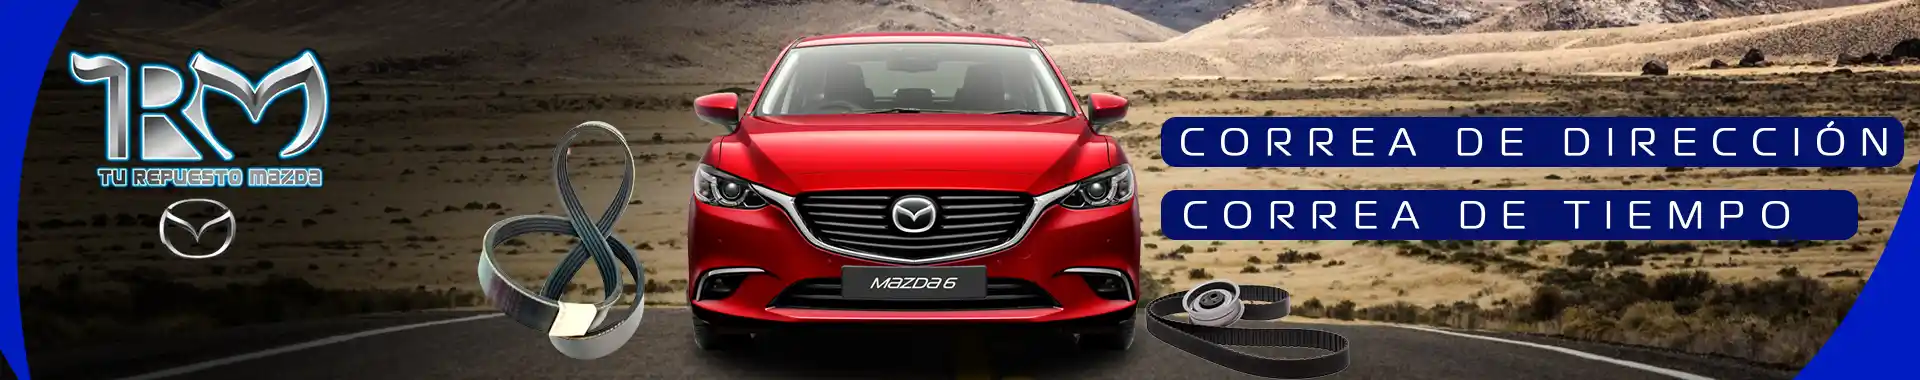 Imagen 4 del perfil de Tu Repuesto Mazda